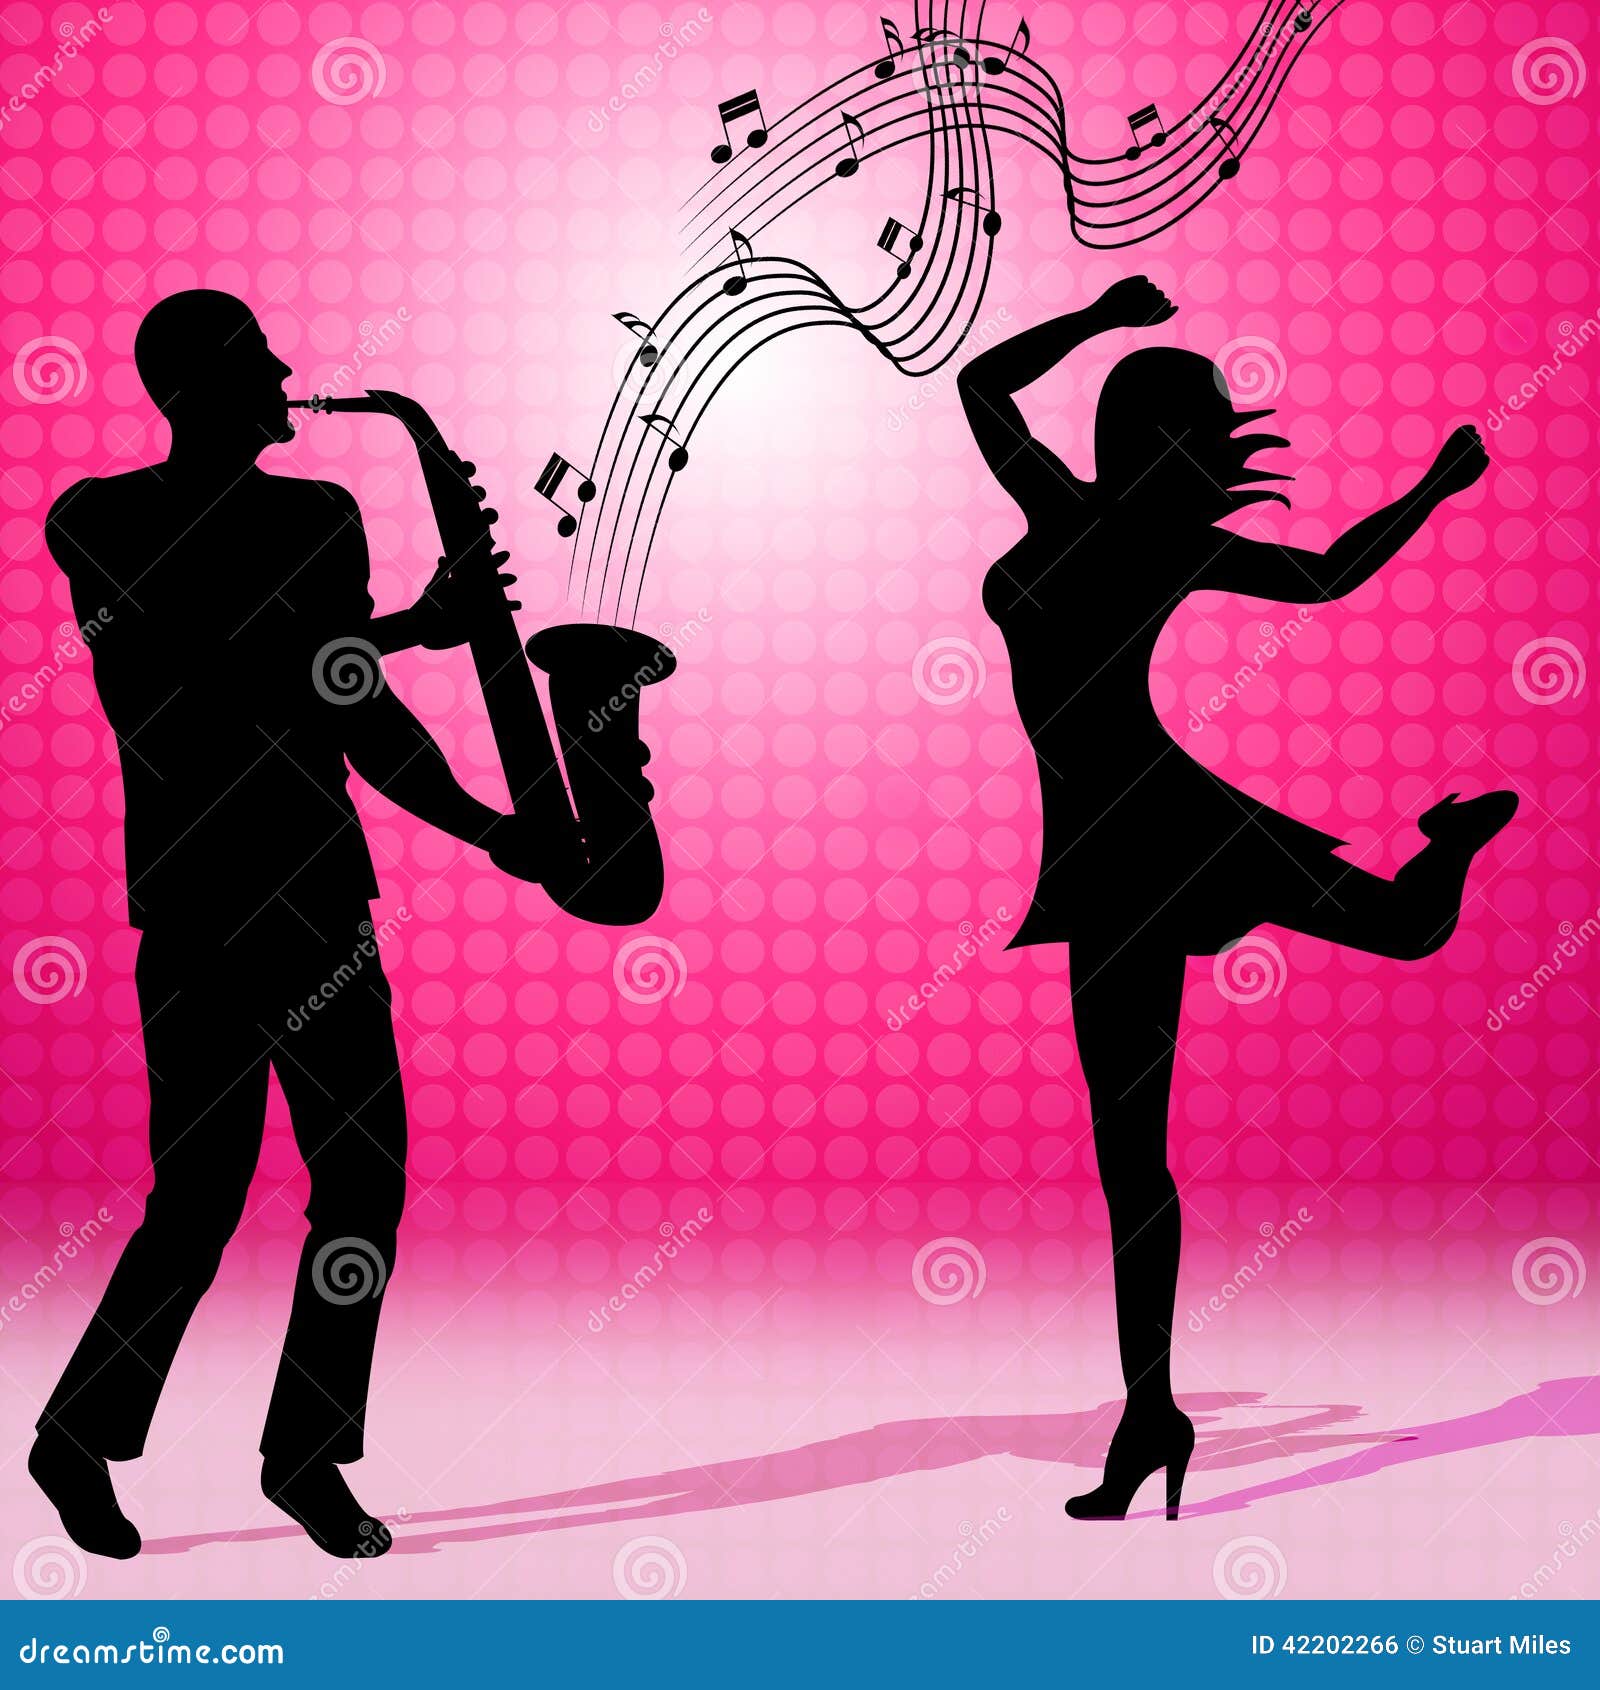 Саксофон саксофон танцует. Саксофон и танец. Танец под саксофон. Девушка с саксофоном. Танец с саксофонами картинка.